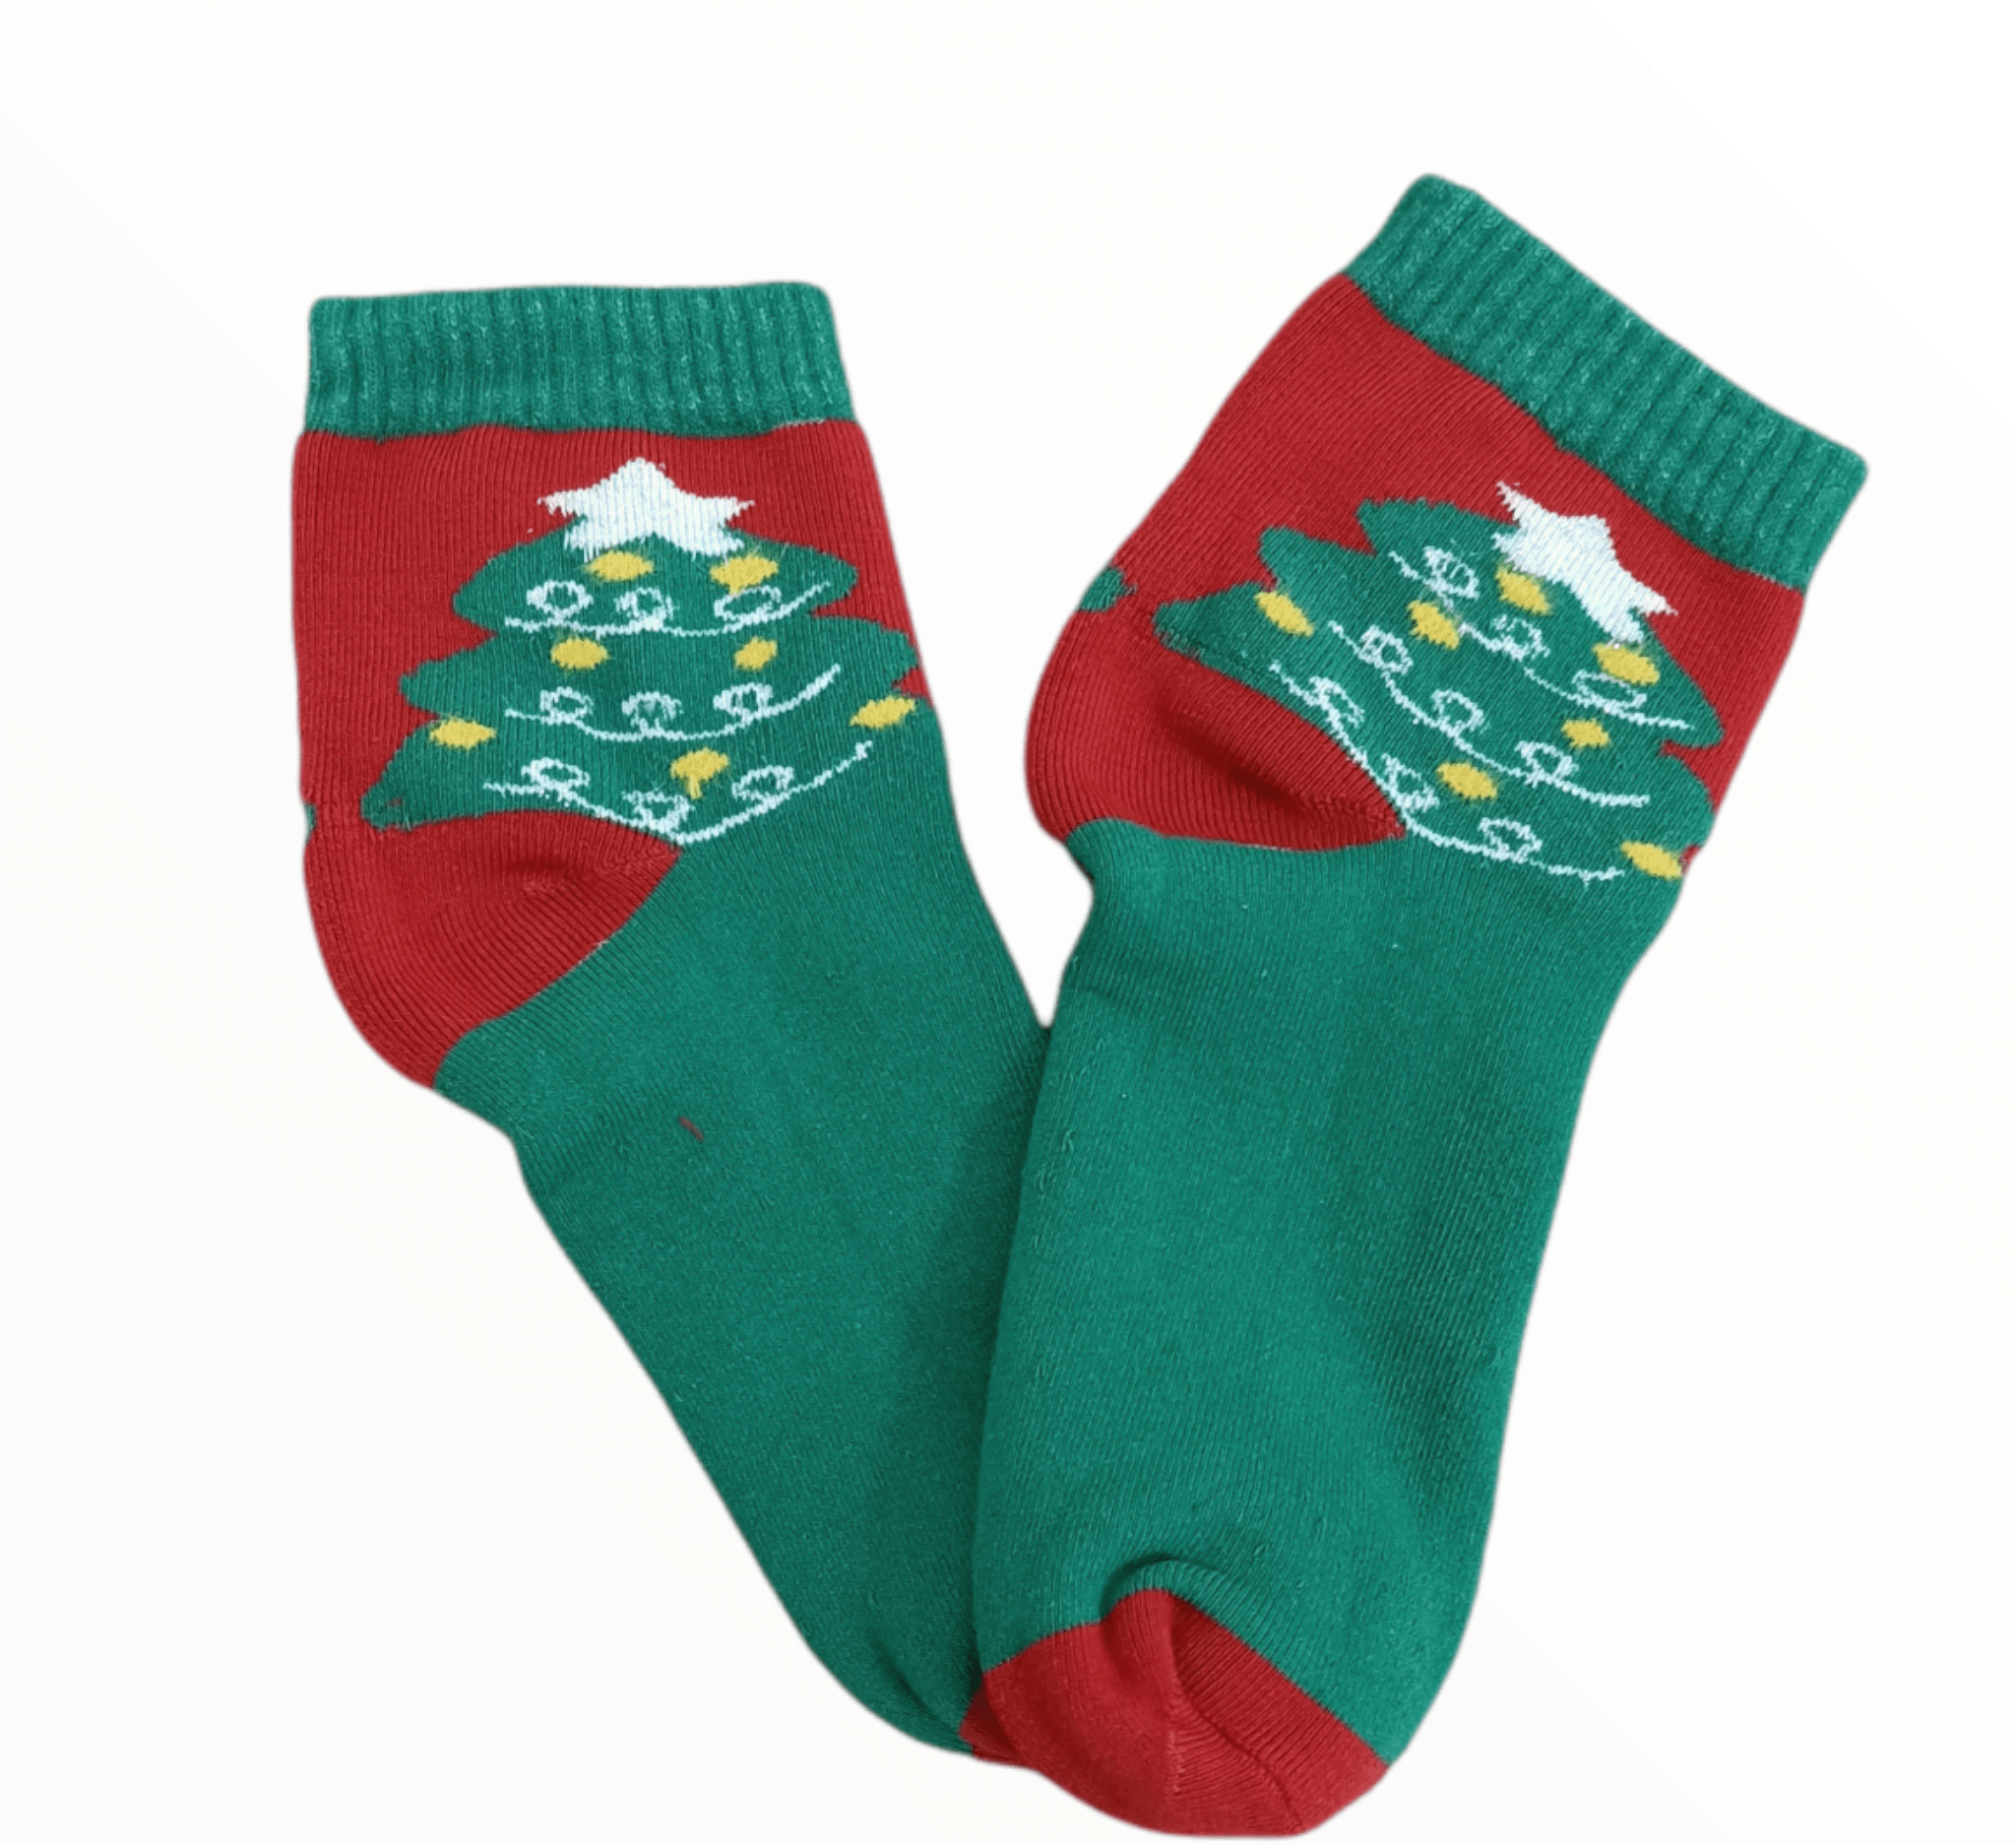 ElOutlet (Unisex - Men & Women) Christmas Socks - One-Size - 12